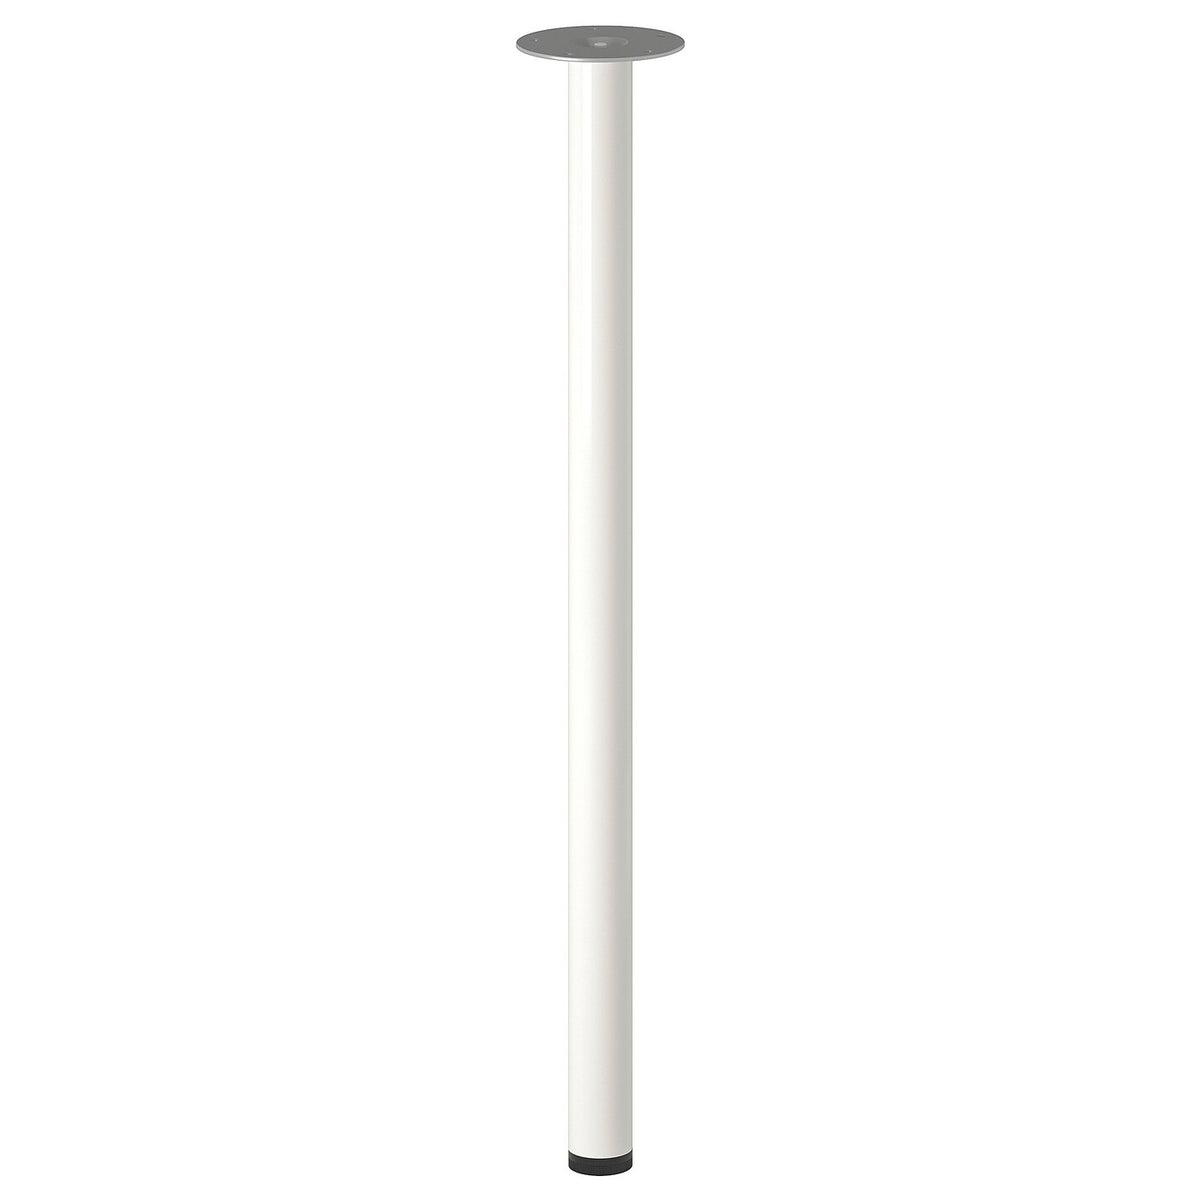 LAGKAPTEN / ALEX table, white,140x60 cm